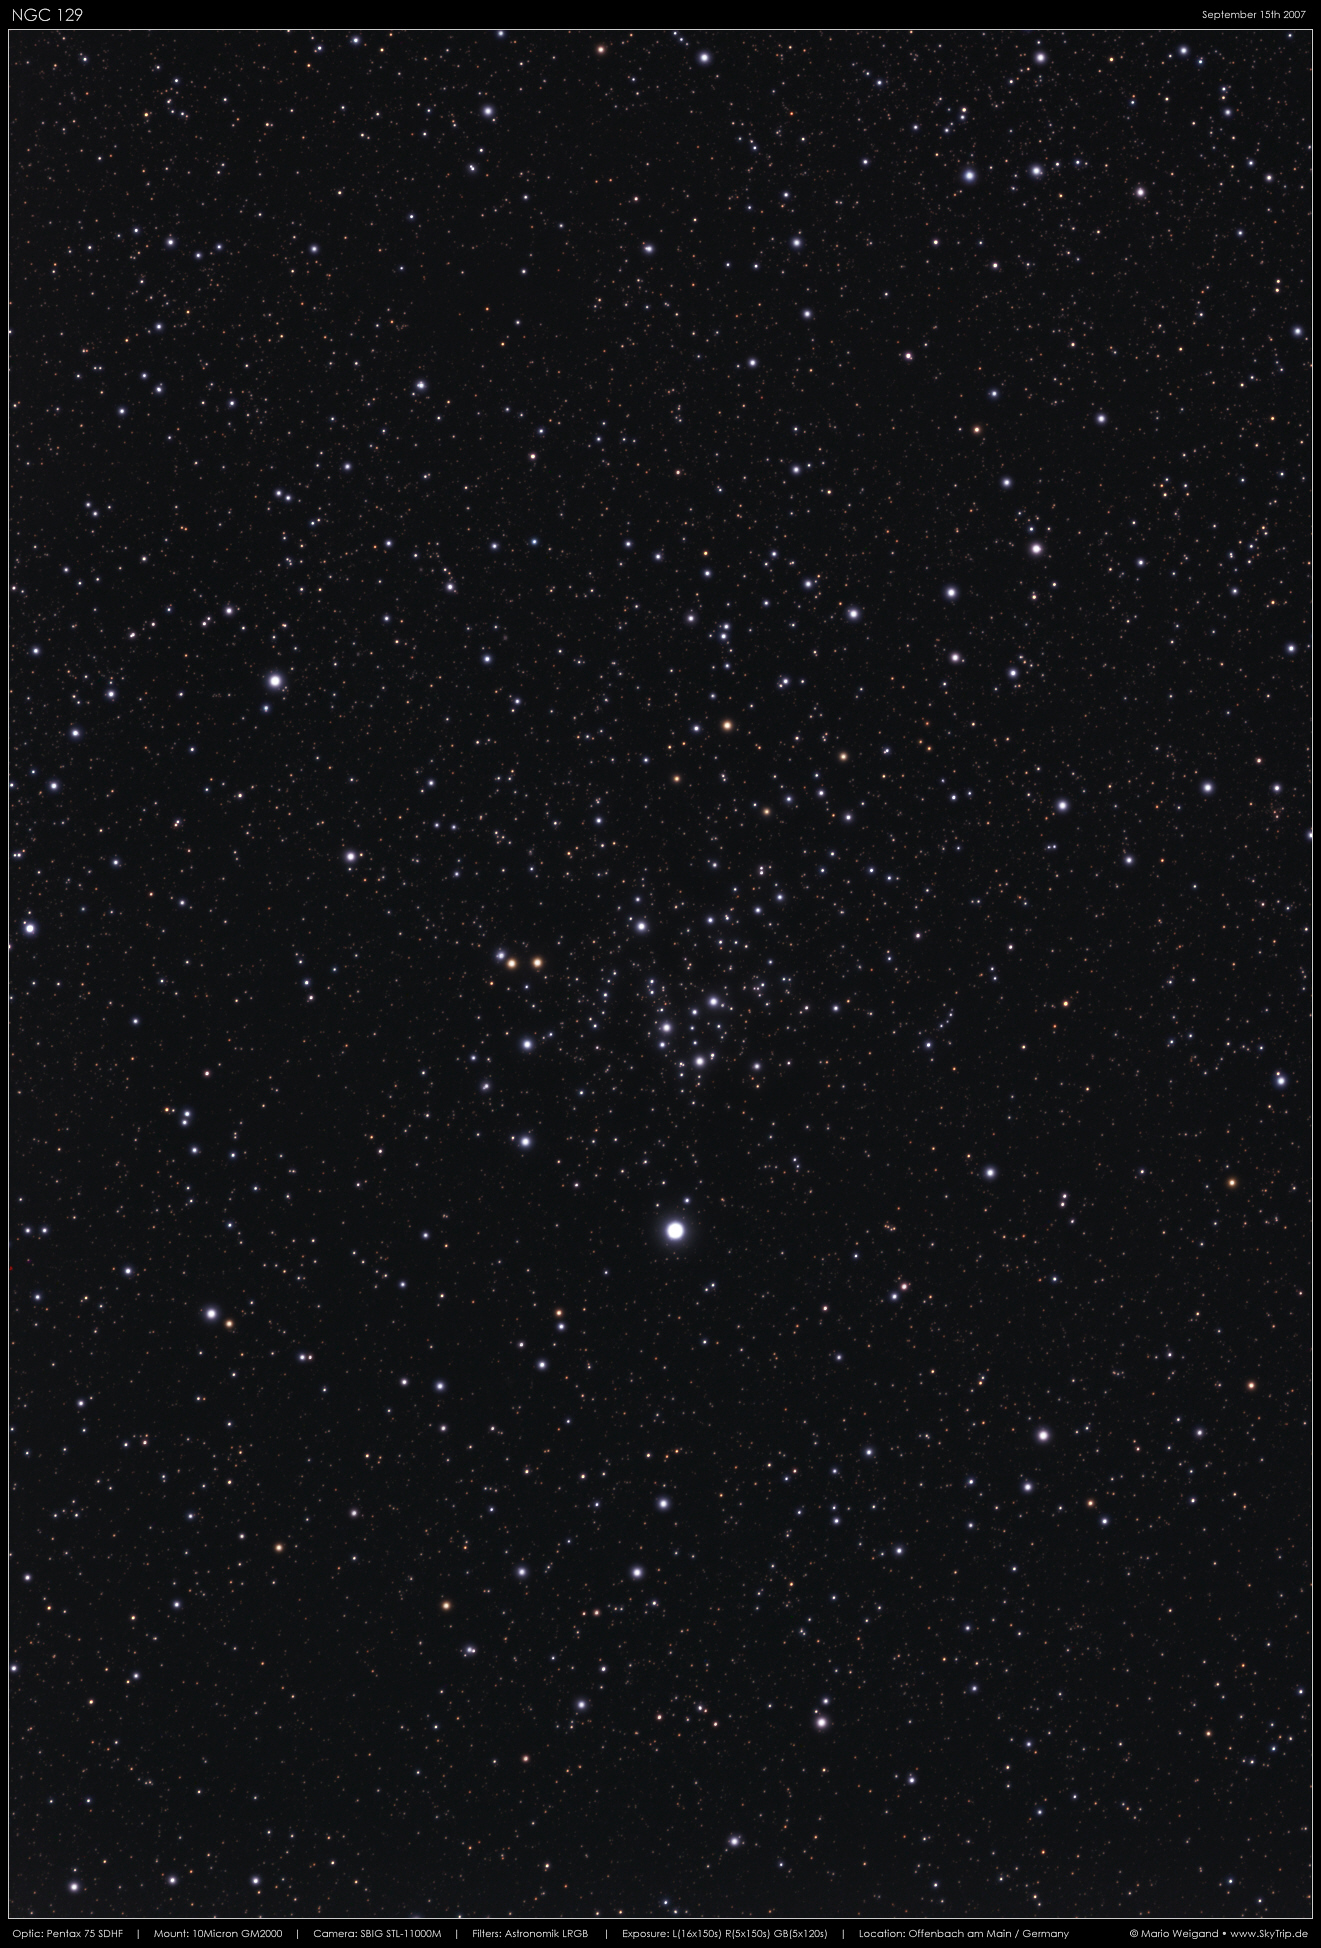 Sternhaufen NGC 129